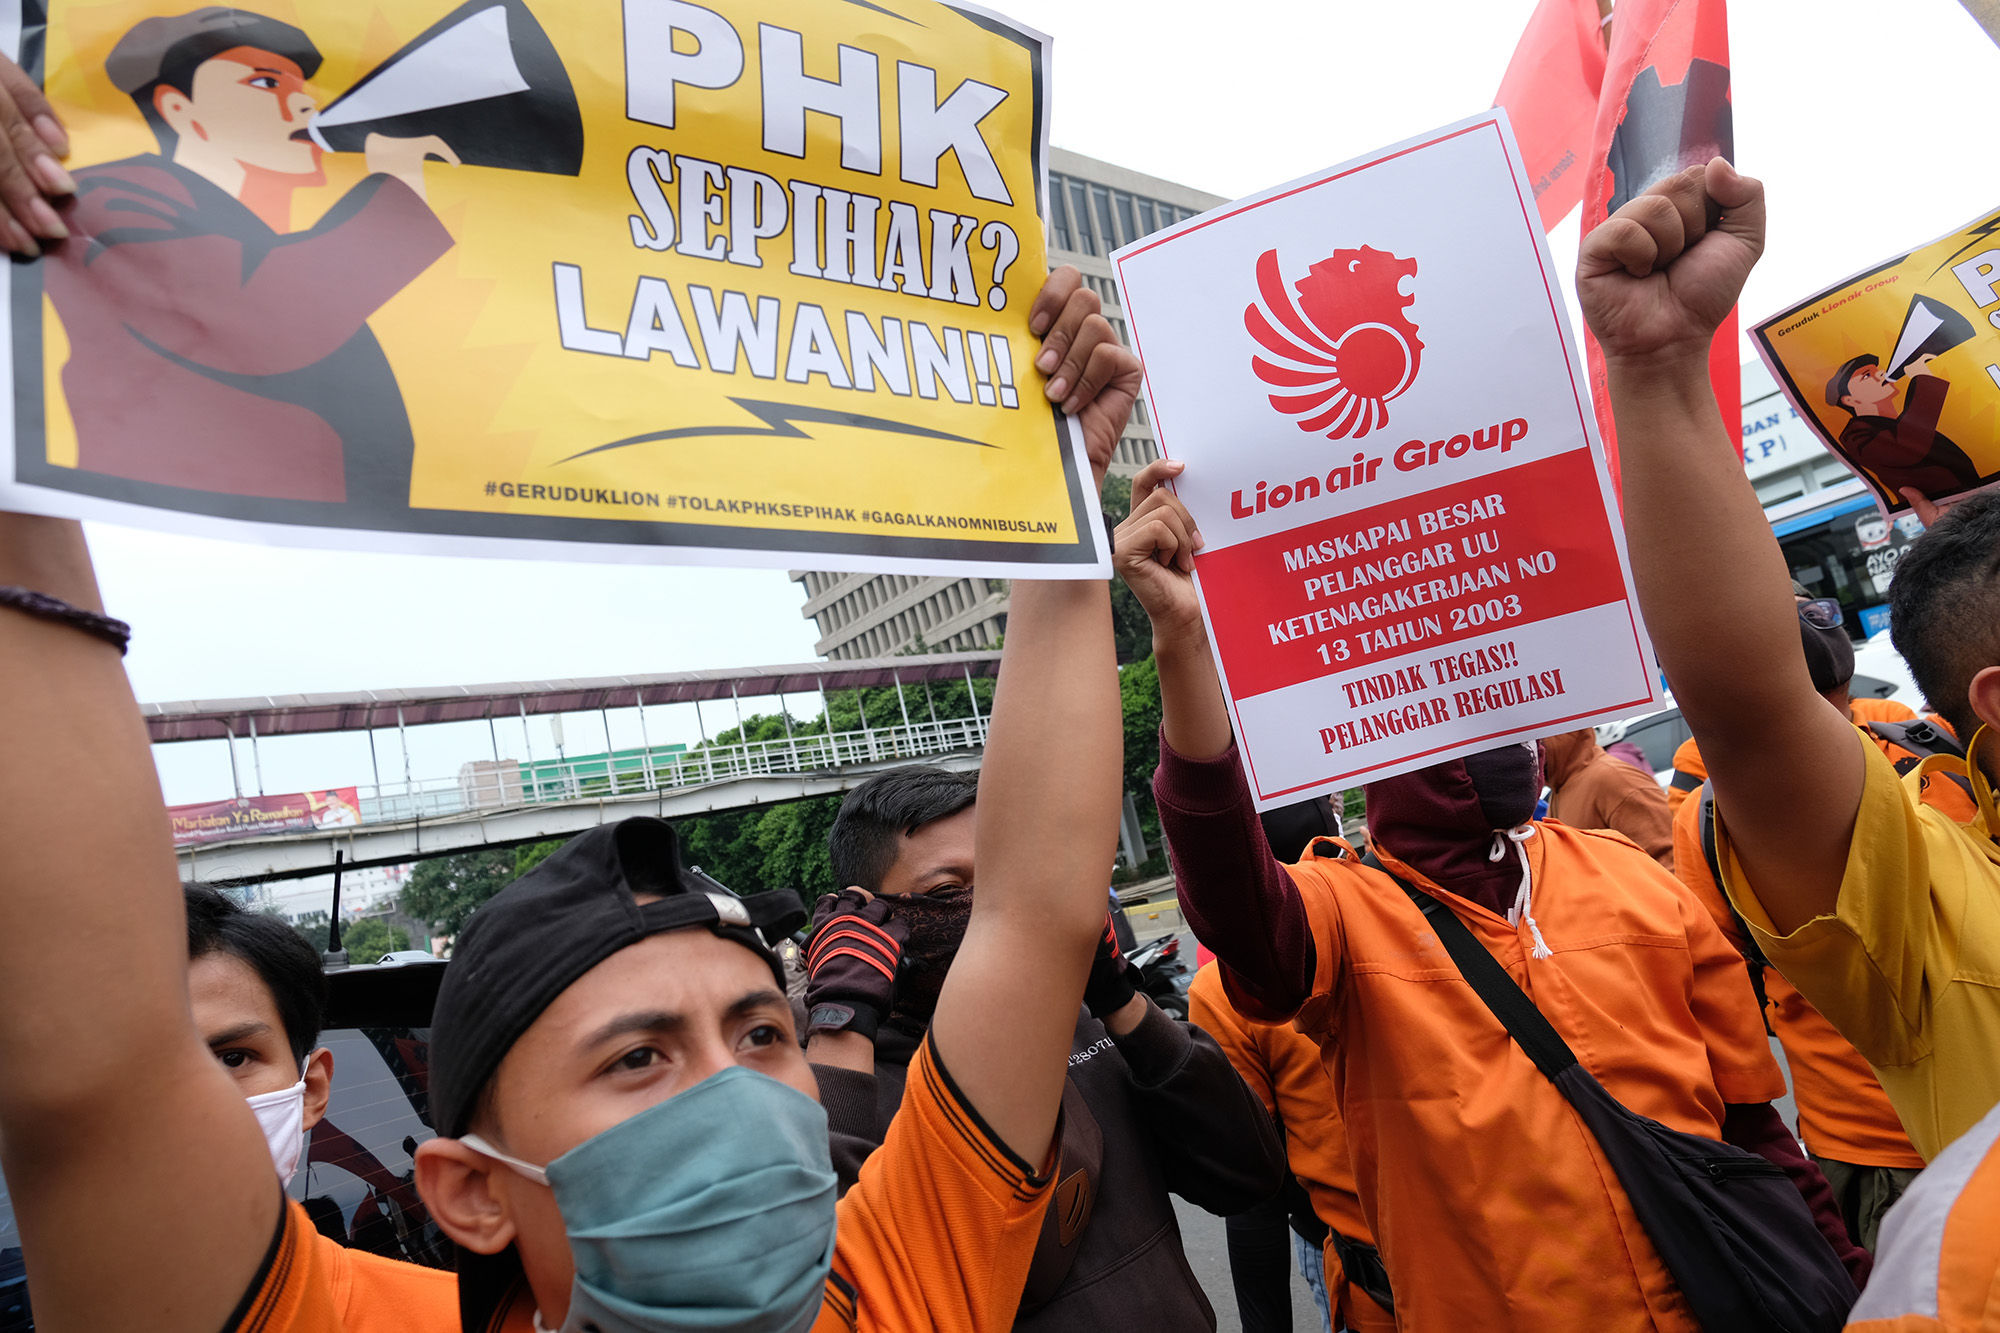 <p>Puluhan pekerja outsourcing maskapai penerbangan Lion Air melakukan aksi unjuk rasa di Lion Air Tower, Jalan Gajah Mada, Jakarta Pusat, Senin, 13 Juli 2020. Dalam aksinya mereka menuntut kepada manajemen Lion Air untuk segera membayarkan tiga bulan tunggakan iuran BPJS Kesehatan, sisa THR yang baru dibayarkan sebesar Rp1,5 juta dari Rp4,1 juta, dan meminta Lion Air membayarkan pesangon para pekerja yang diberhentikan secara sepihak disaat pandemi COVID-19. Foto: Ismail Pohan/TrenAsia</p>
